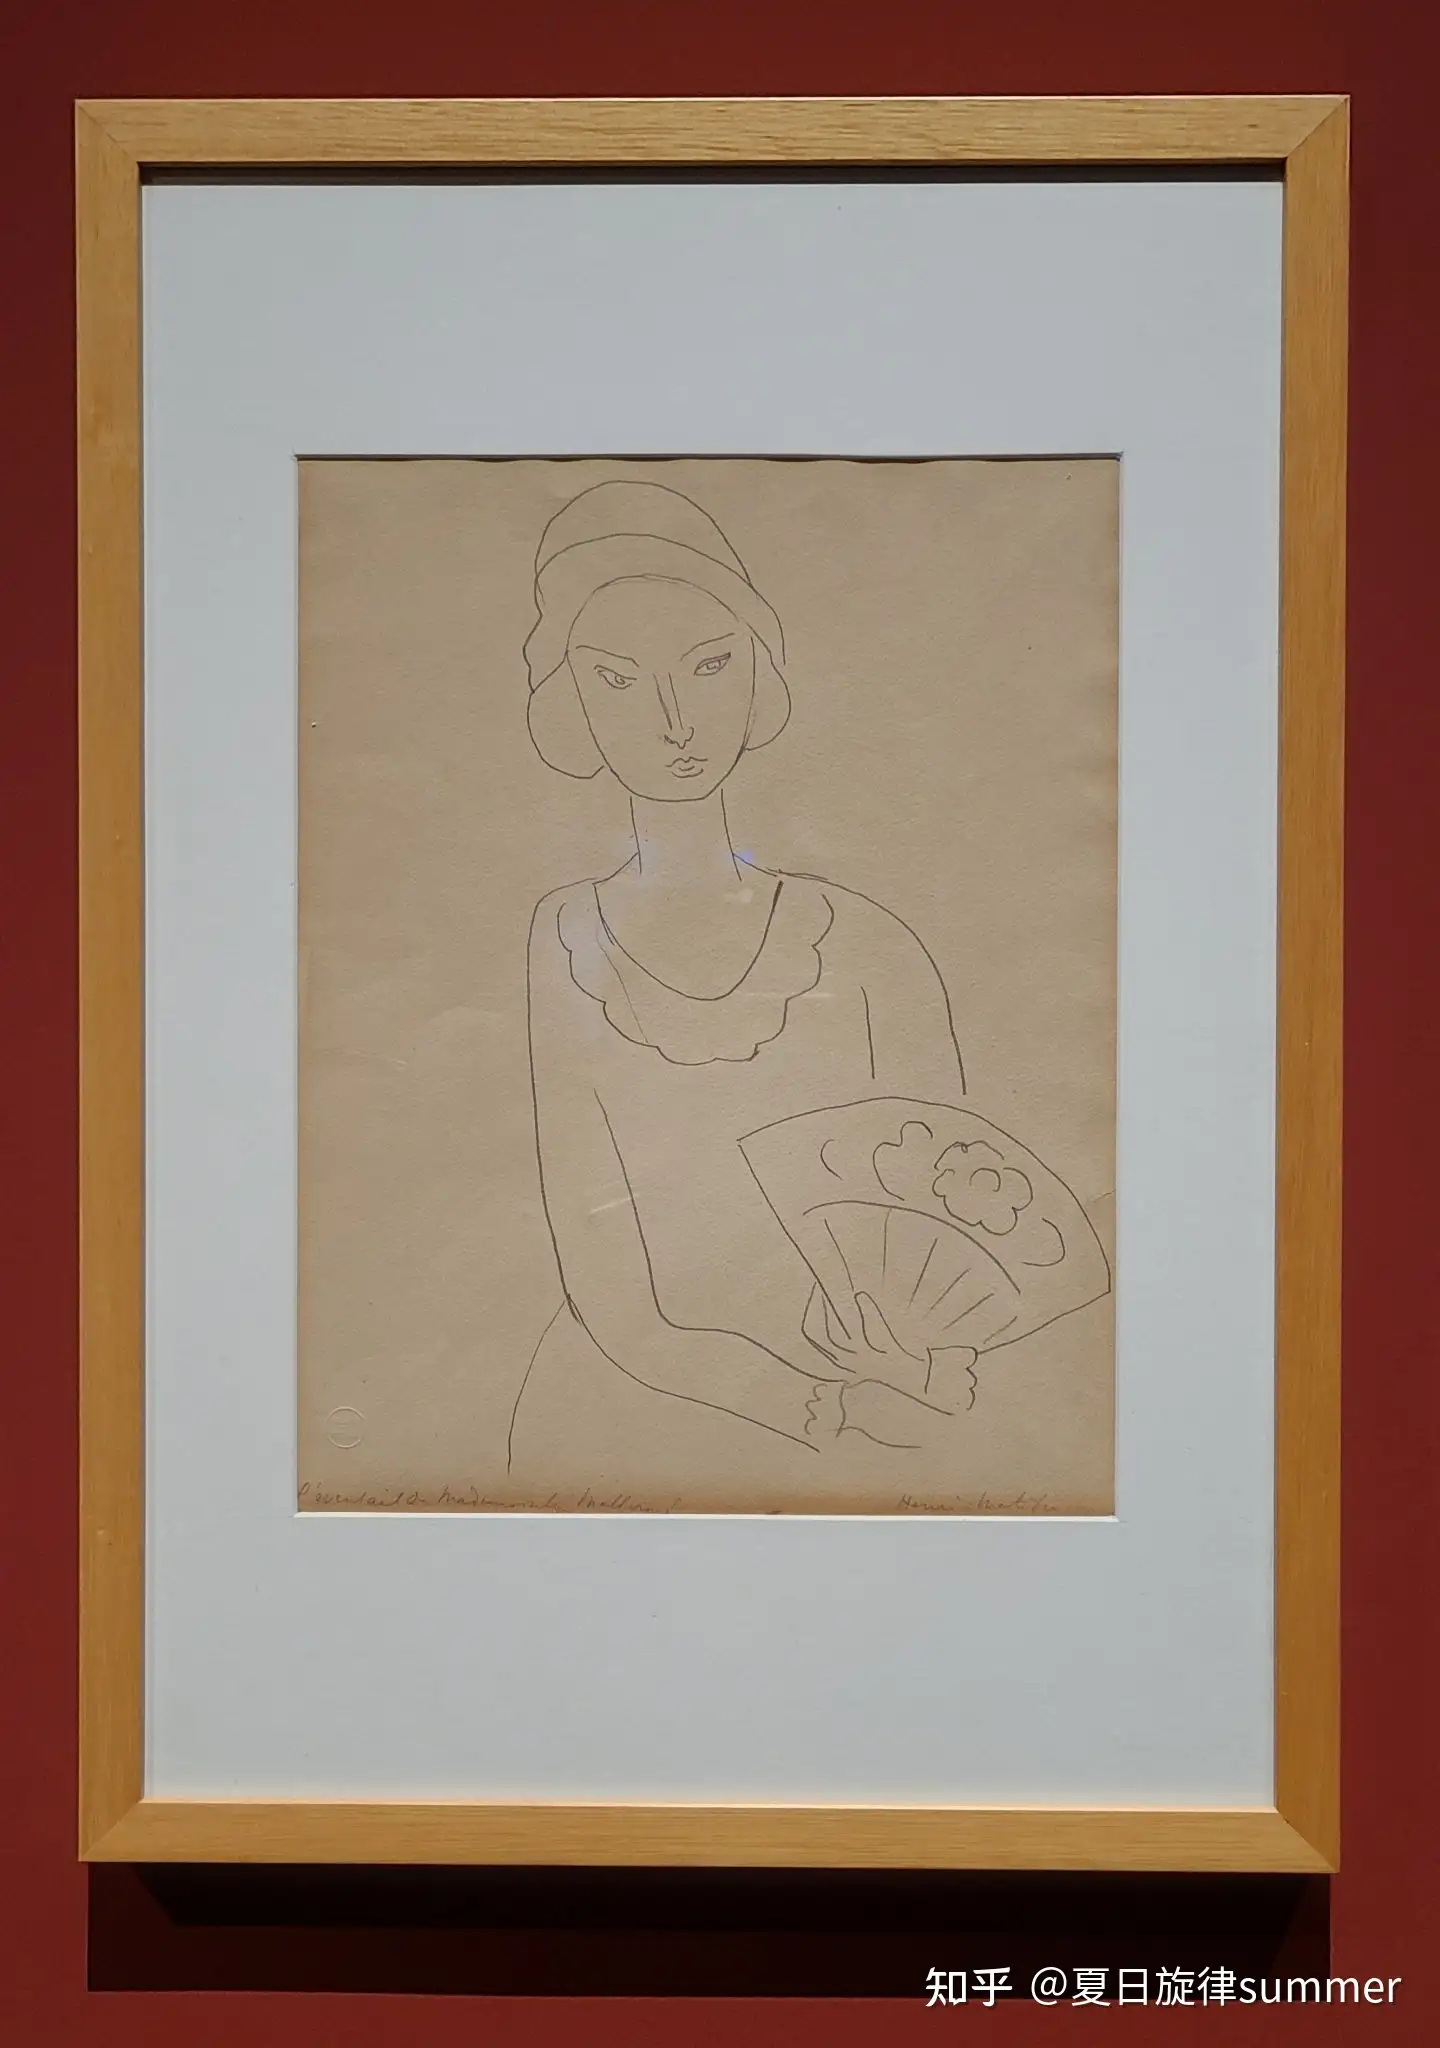 百年无极——西方现当代艺术大师作品展”2 毕加索、马蒂斯的版画和铅笔画